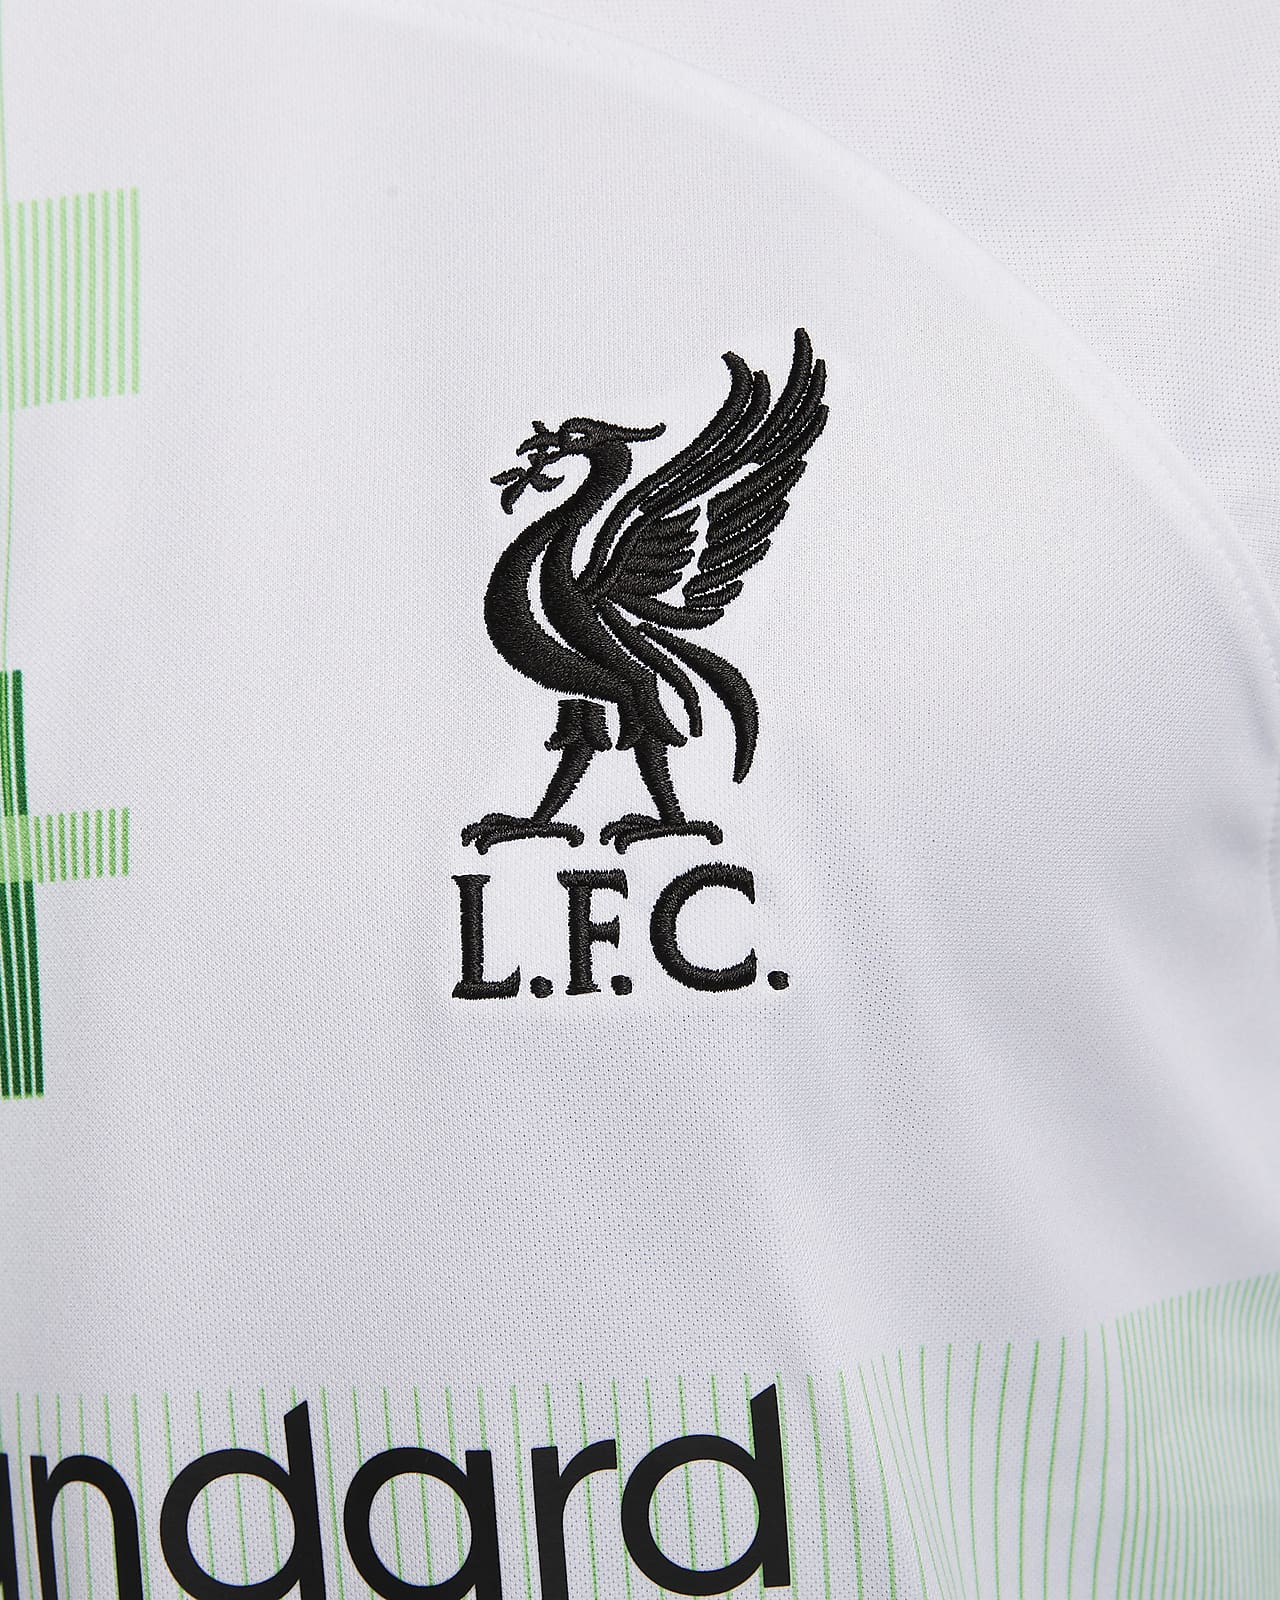 Liverpool 2023/24 Nike Third Kit - FOOTBALL FASHION